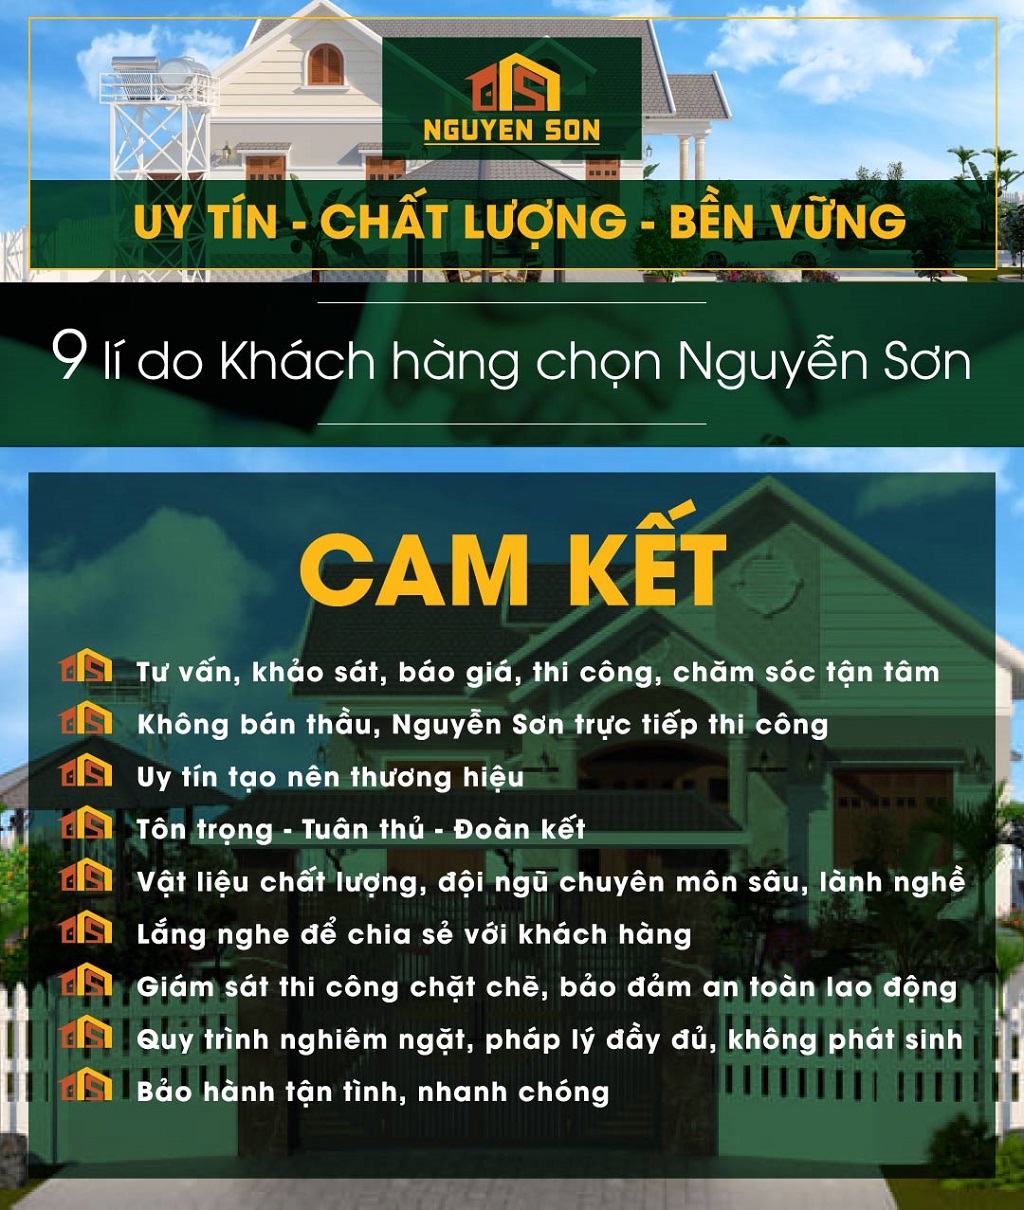 Cam kết sửa chữa nhà Huyện Củ Chi của Xây Dựng Nguyễn Sơn